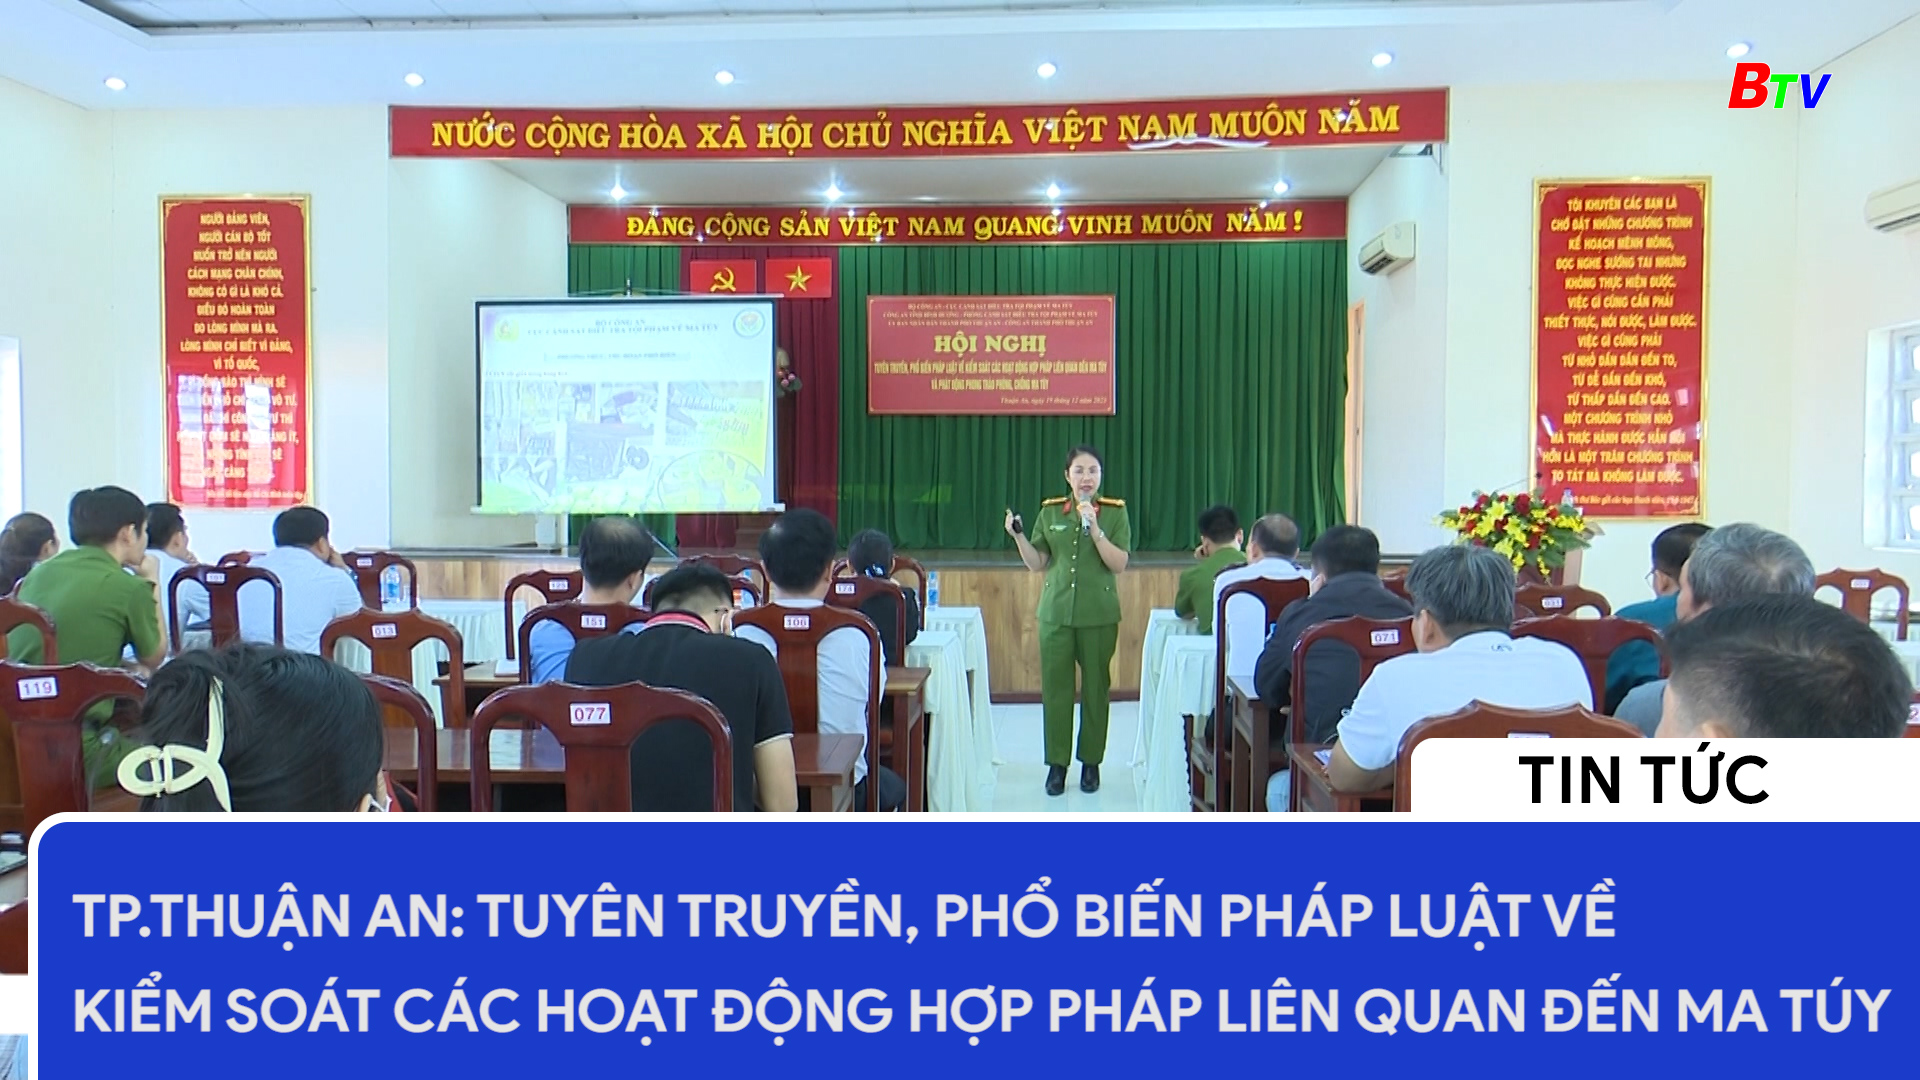 TP.Thuận An: Tuyên truyền, phổ biến pháp luật về kiểm soát các hoạt động hợp pháp liên quan đến ma túy